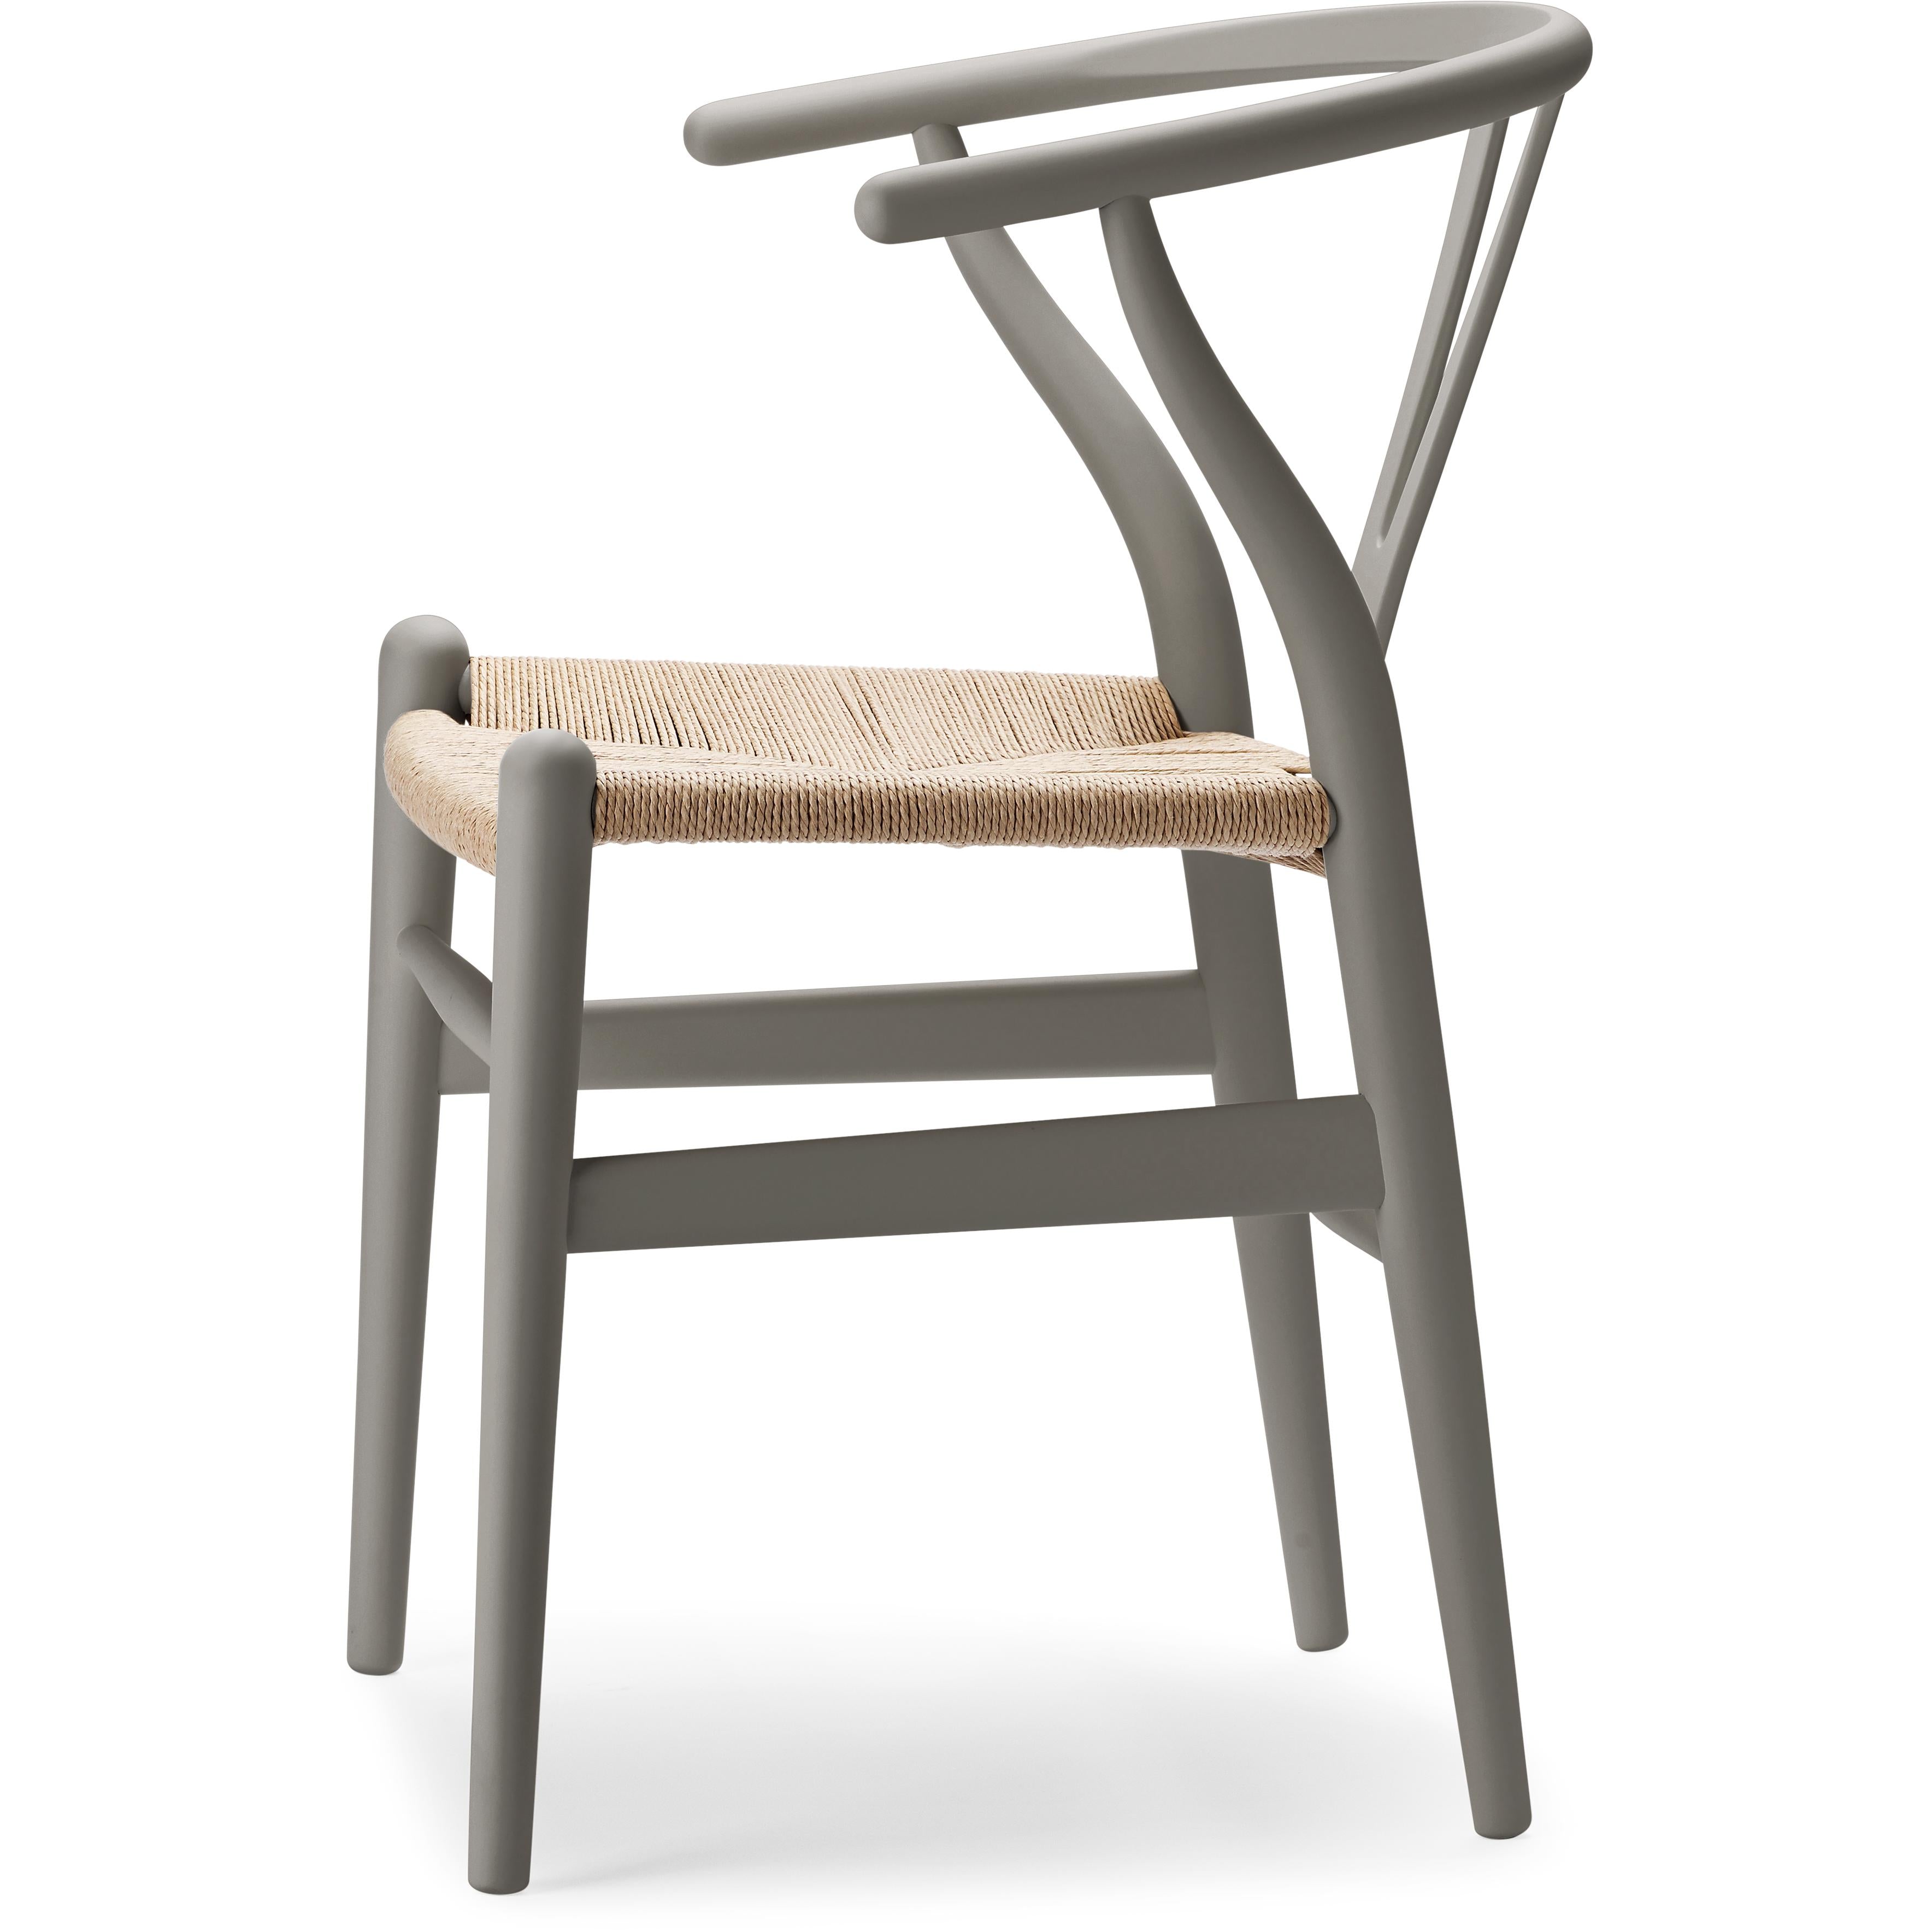 Carl Hansen CH24 WISHBONE Chair Special Edition, přírodní šňůra/měkká hlína